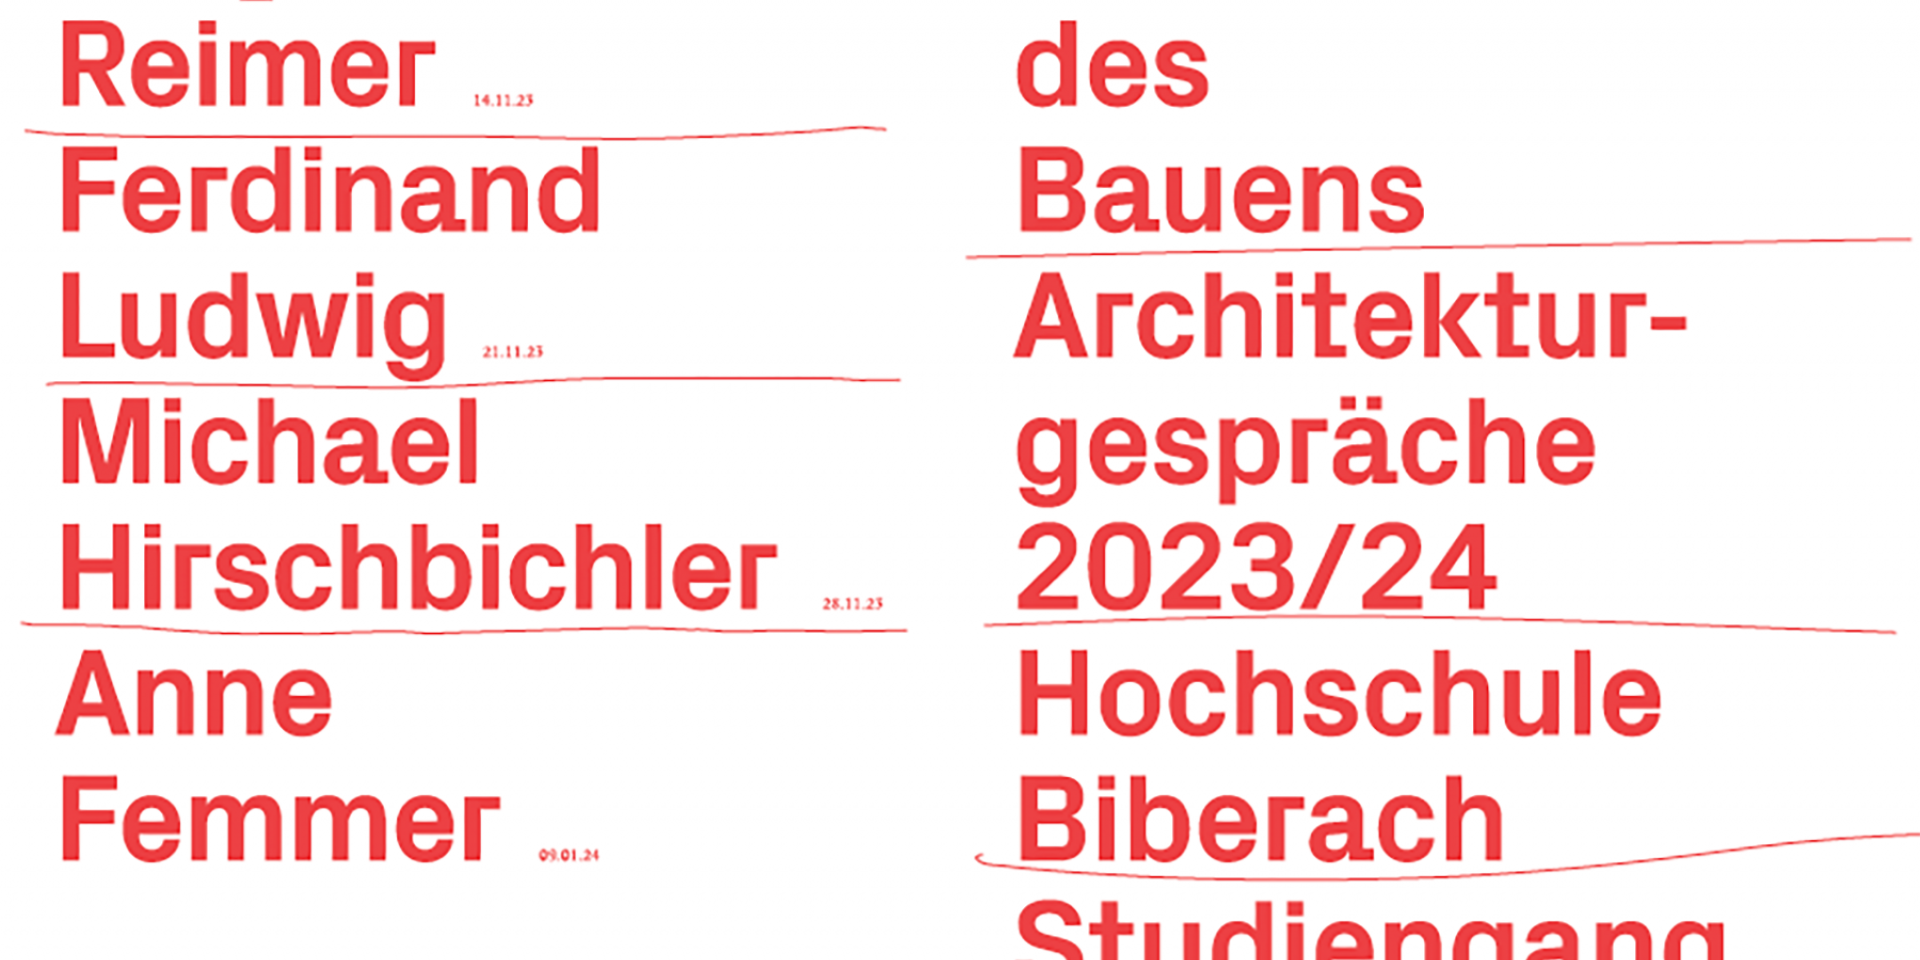 Biberacher Architekturgespräche 2023/24